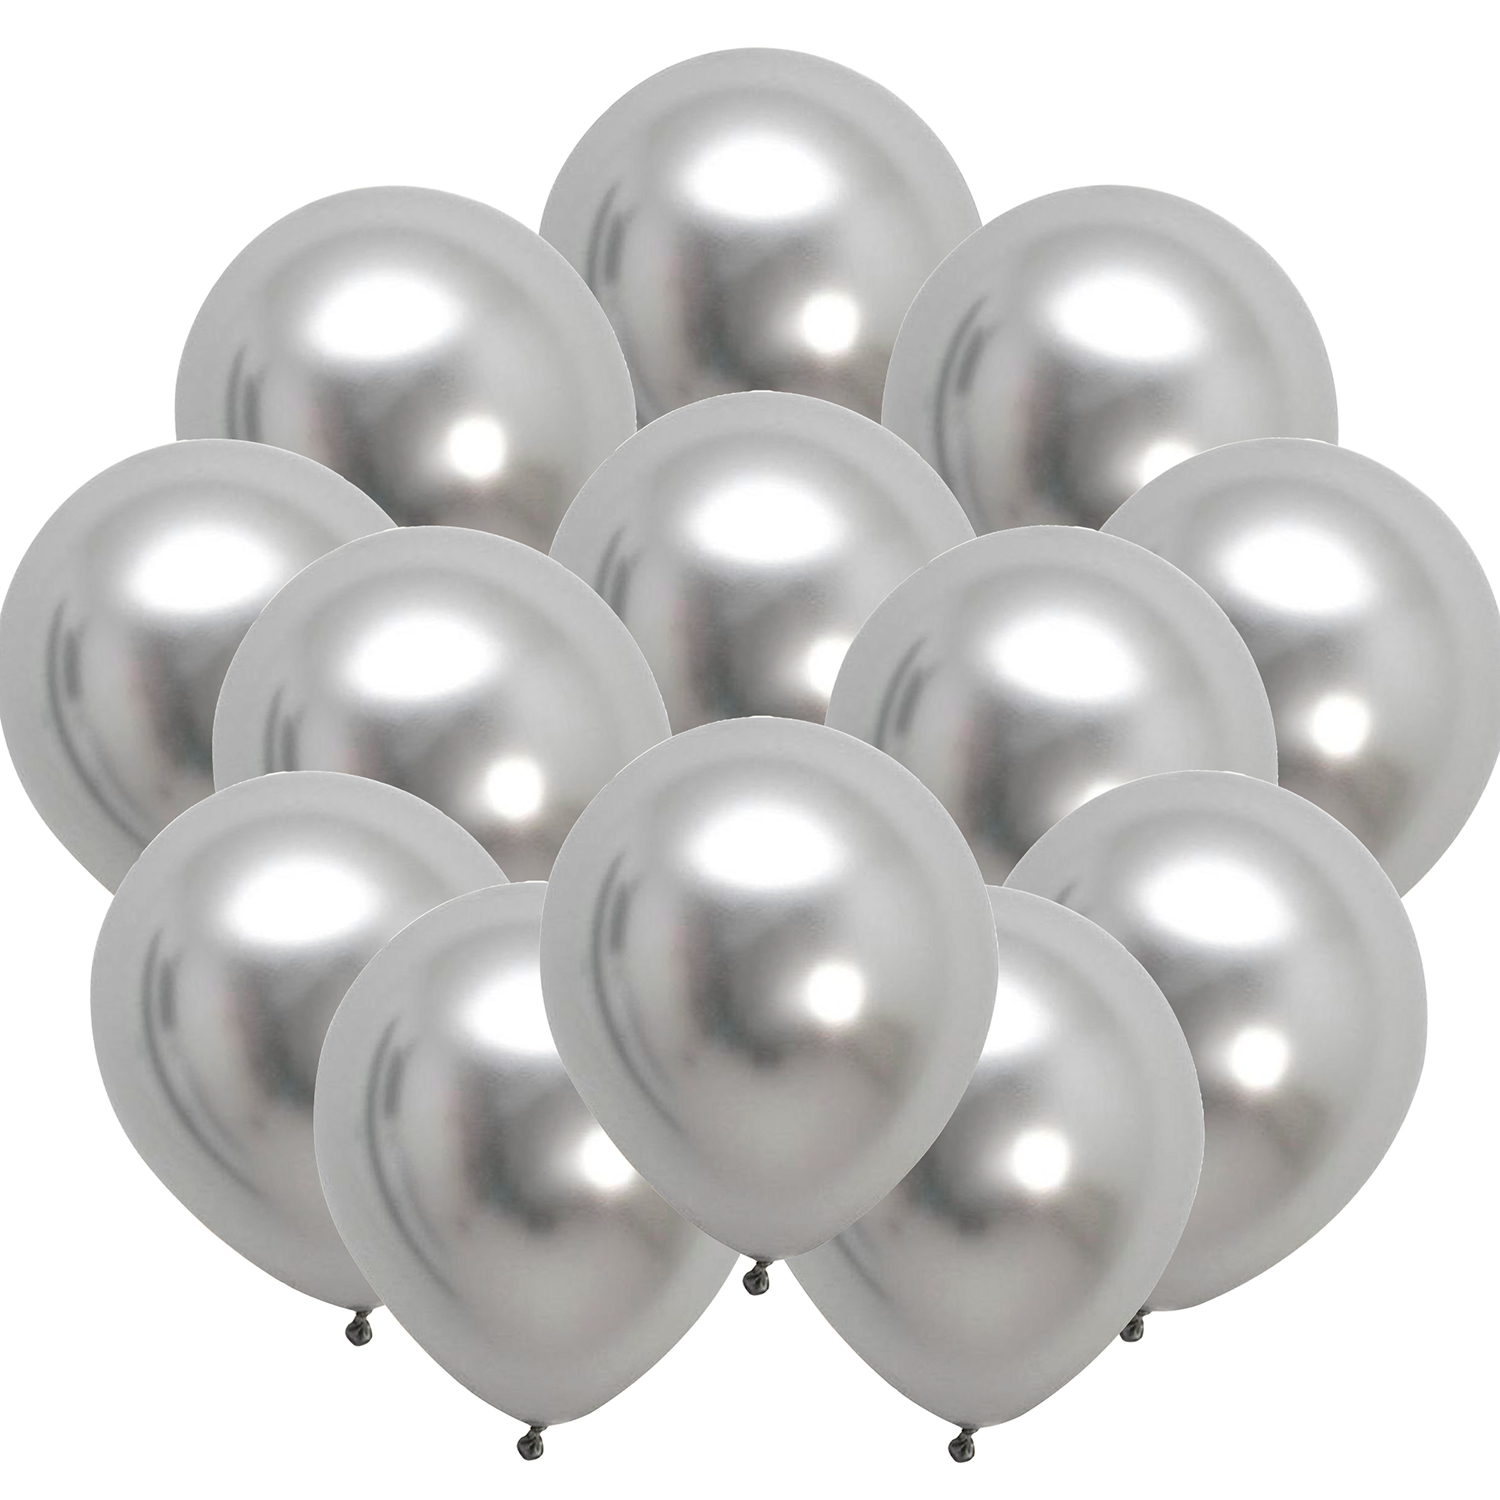 Globos plateados de 9 pulgadas (5000 pzas) - Tilco Balloons